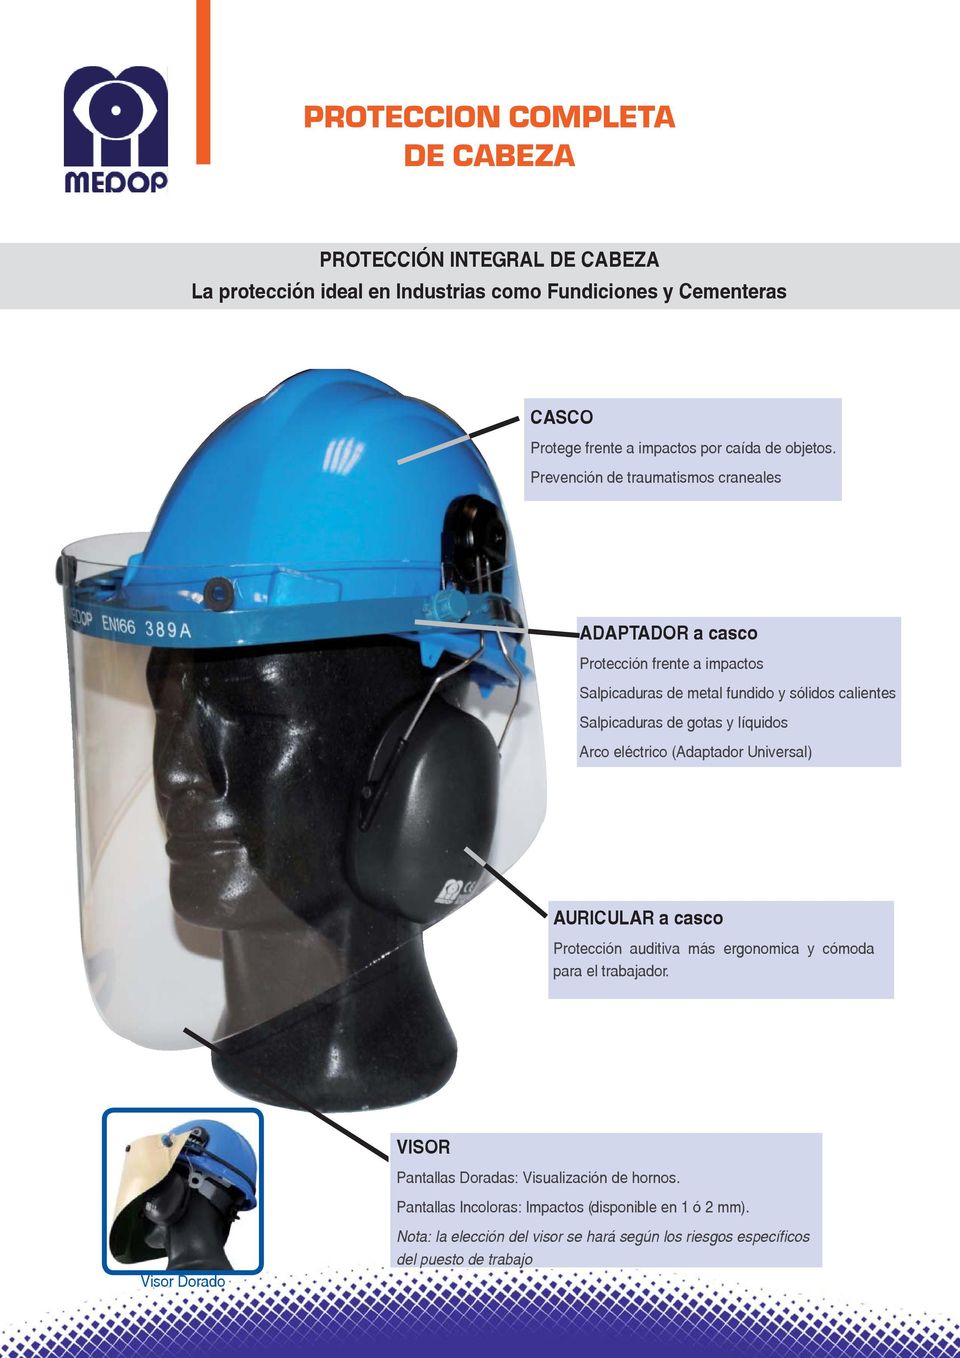 Prevención de traumatismos craneales ADAPTADOR a casco Protección frente a impactos Salpicaduras de metal fundido y sólidos calientes Salpicaduras de gotas y líquidos